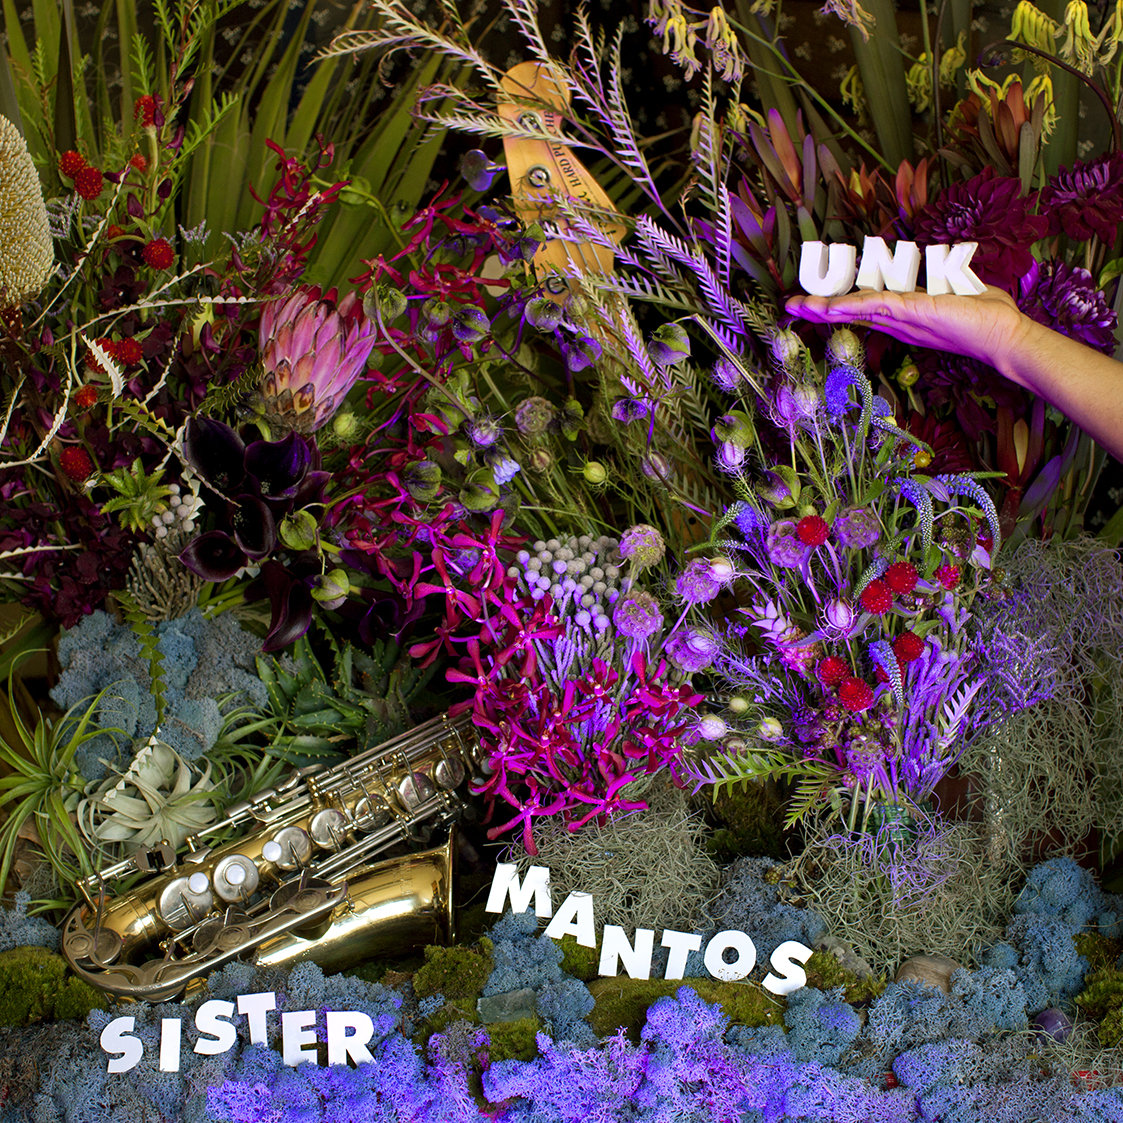 SISTER MANTOS / シスター・マントス / UNK (EP)